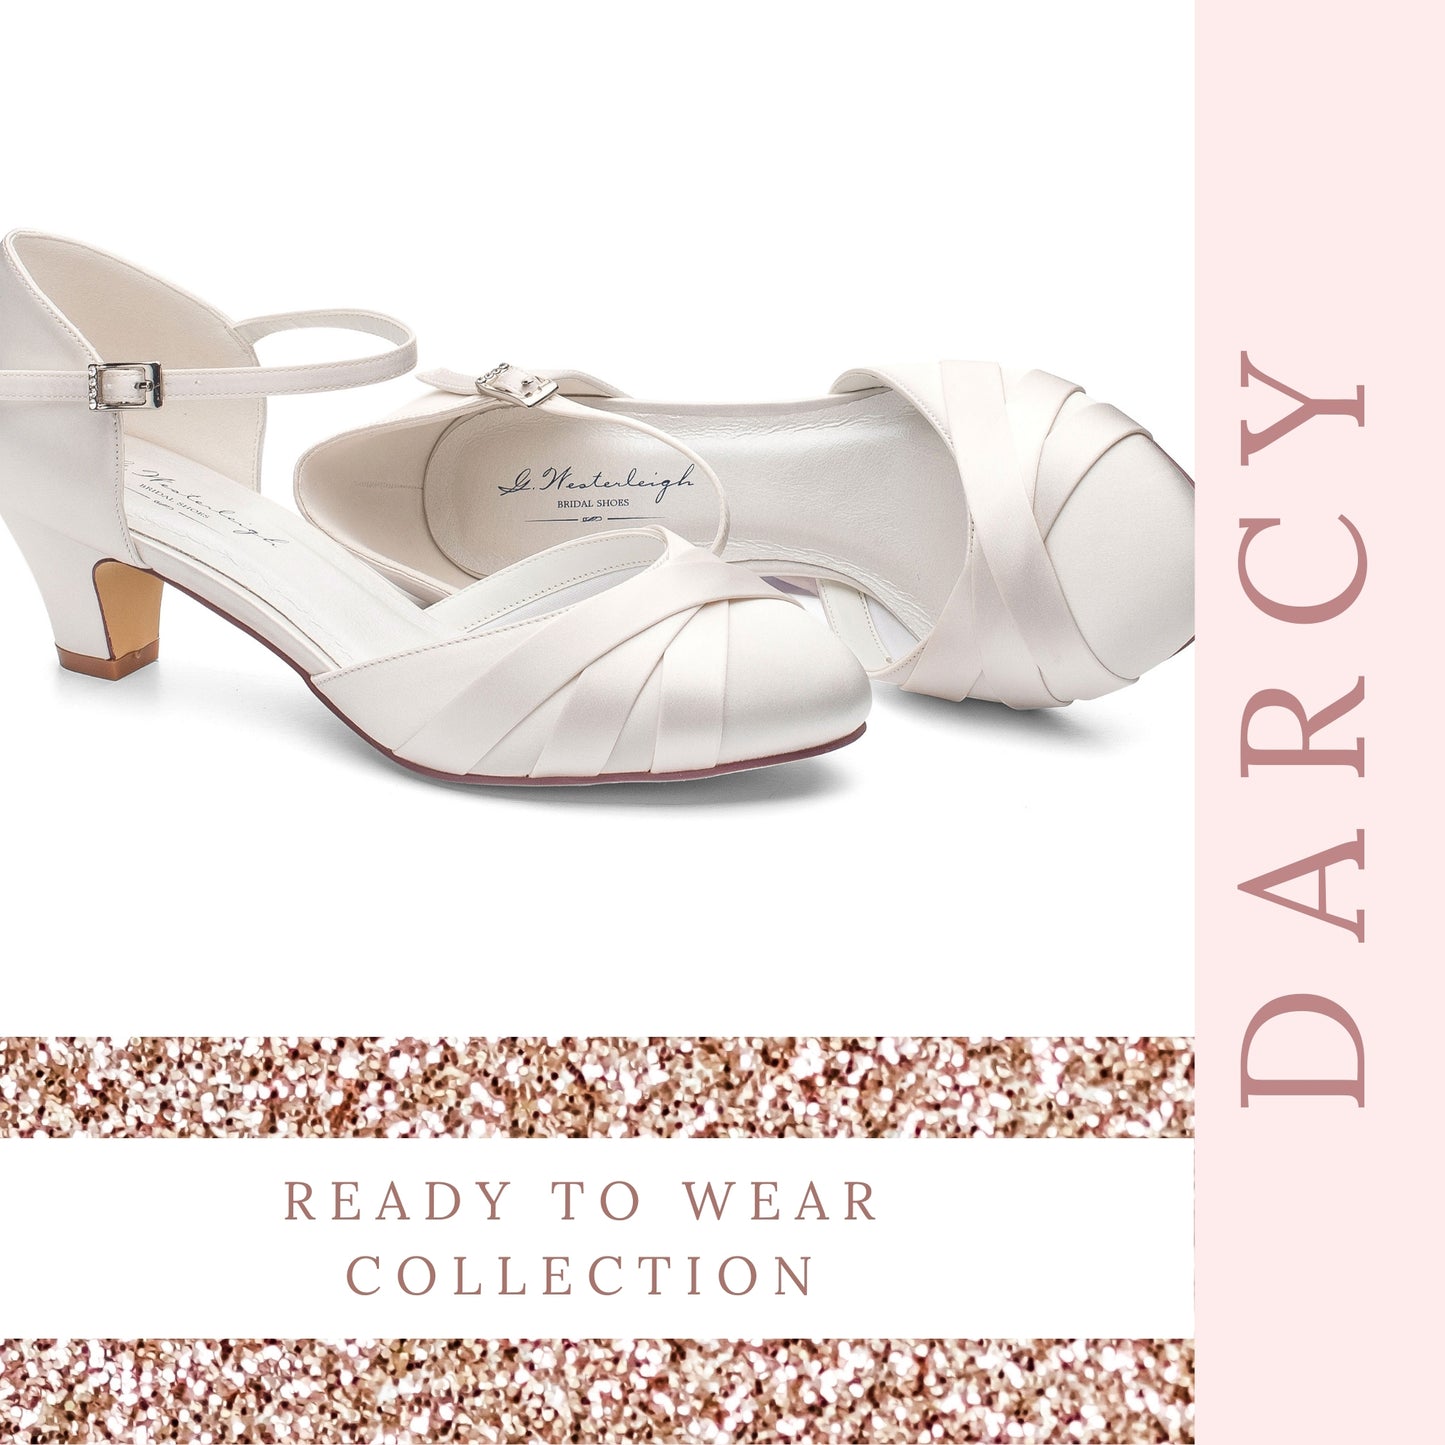 comfy-bridal-shoes